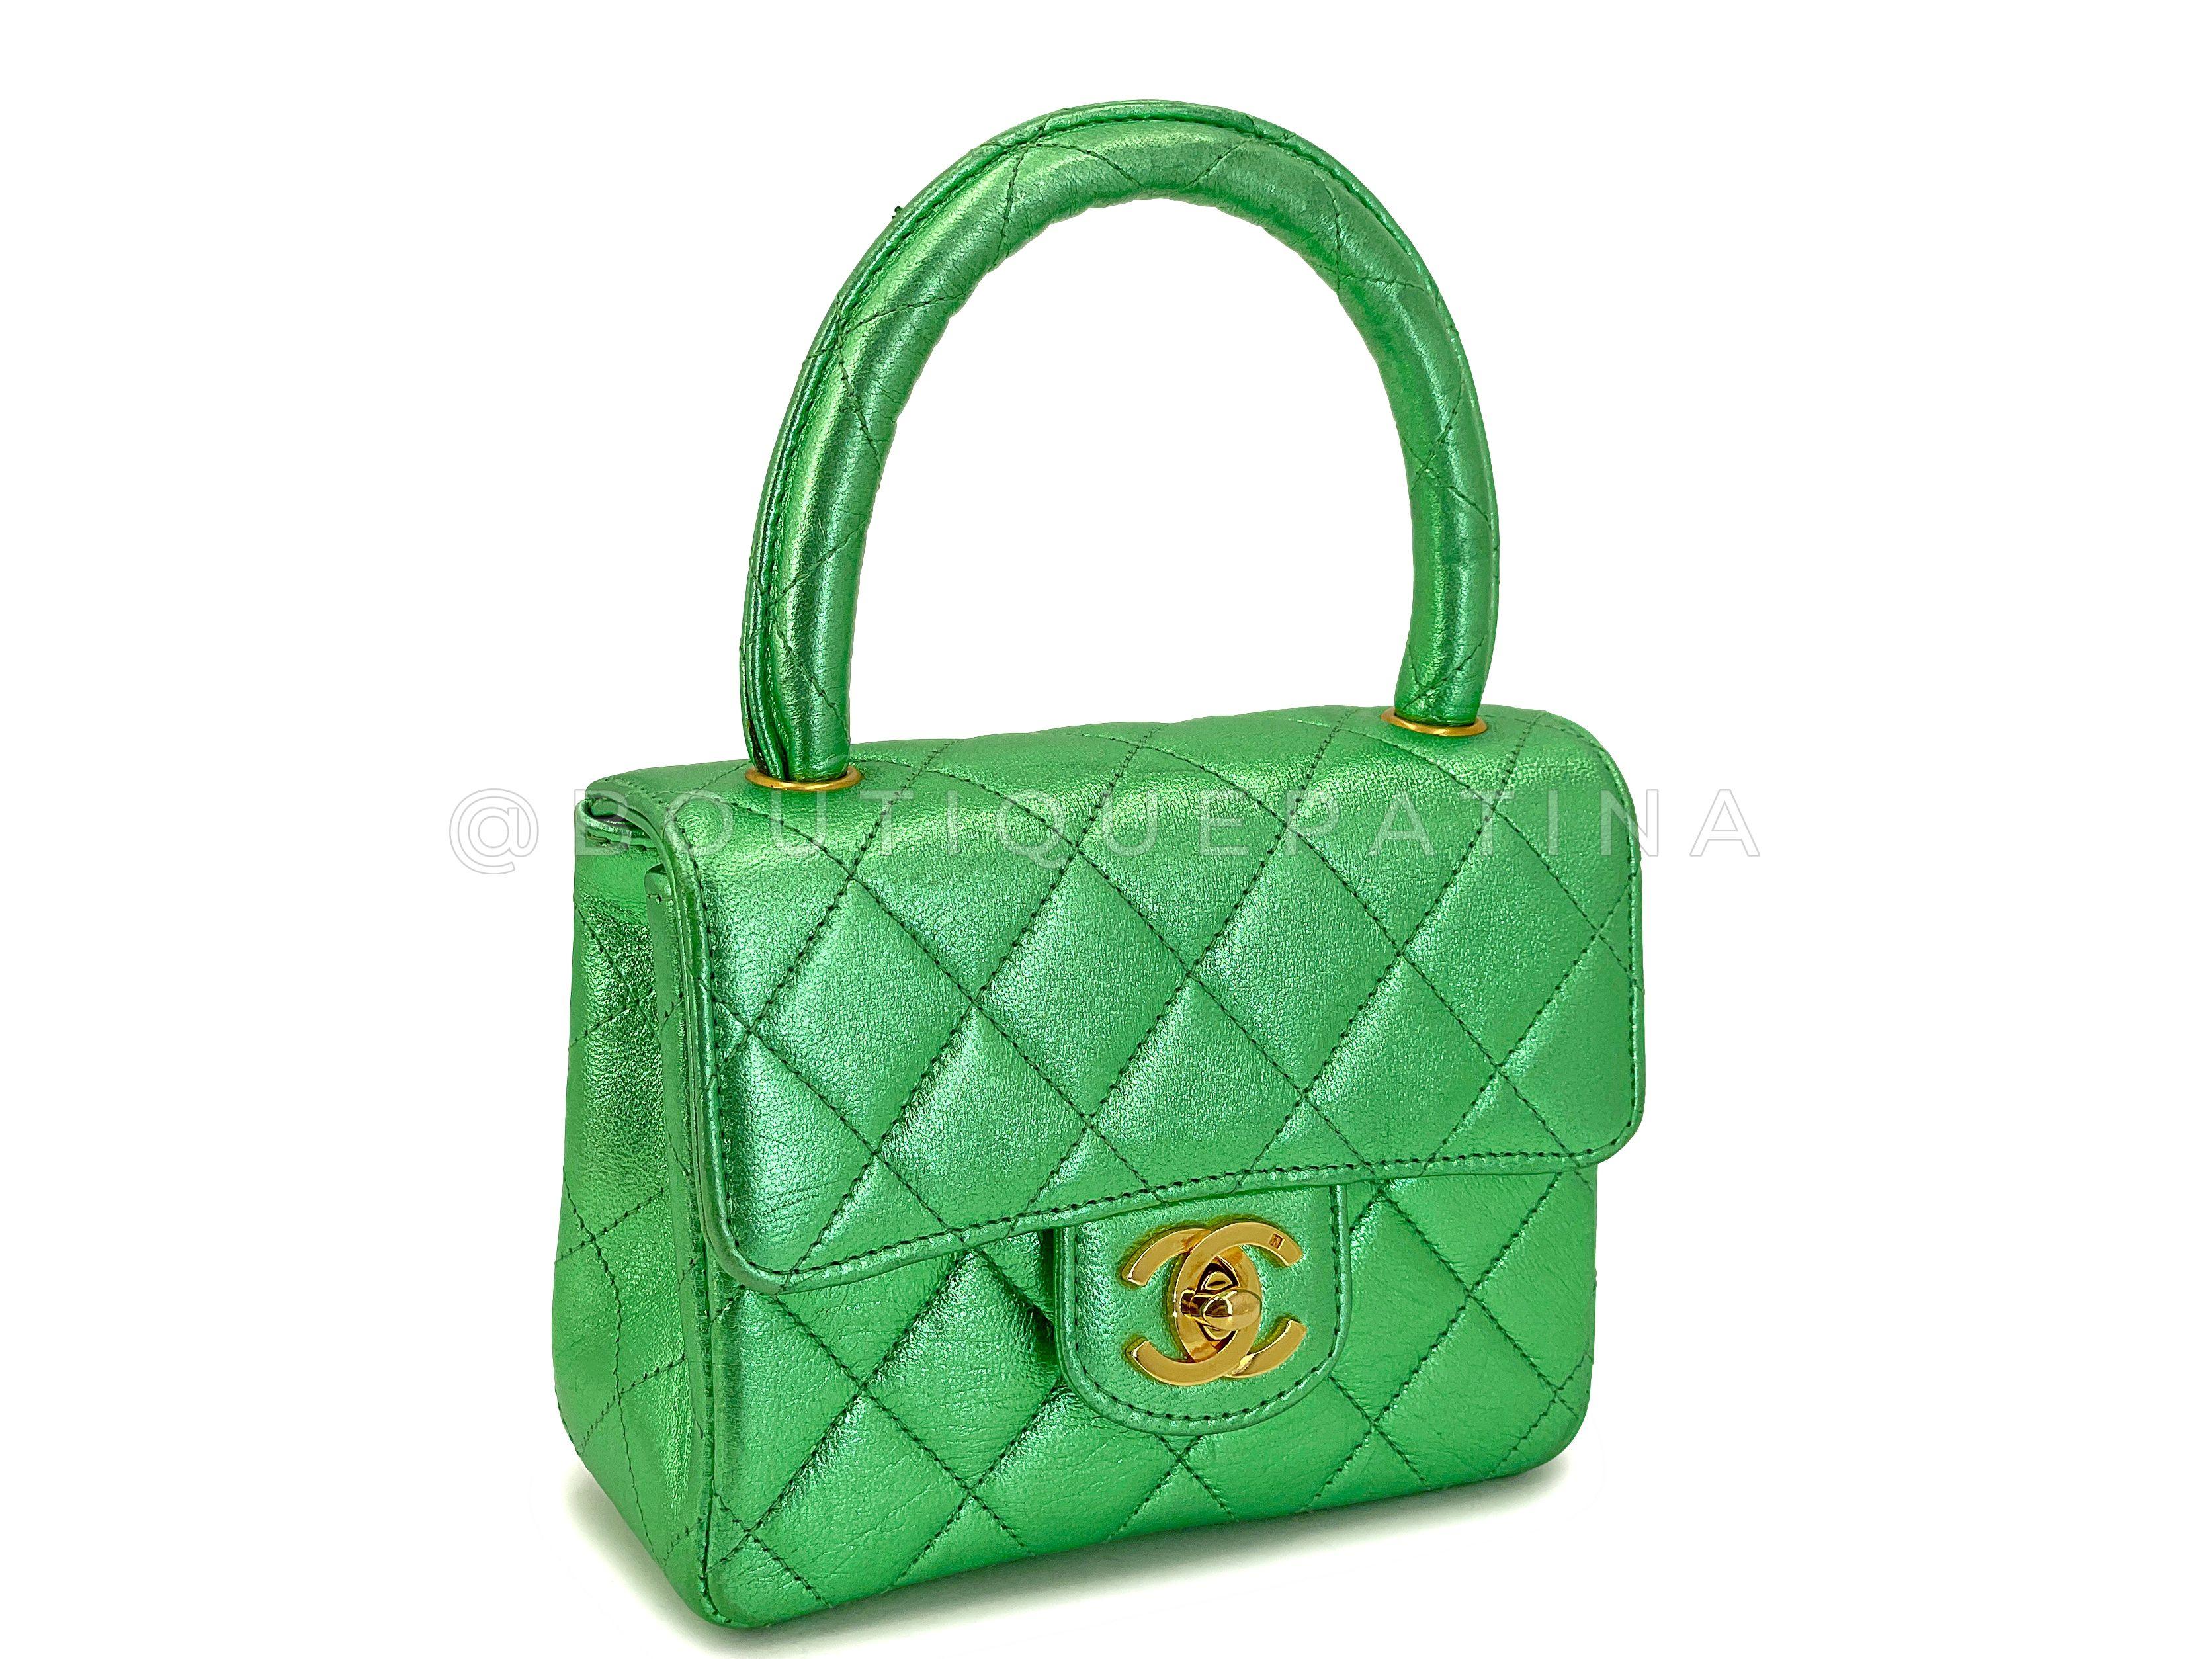 Chanel 1994 Vintage Parent Child Bag Kelly Flap Set Metallic Green 24k GHW 67742 For Sale 11